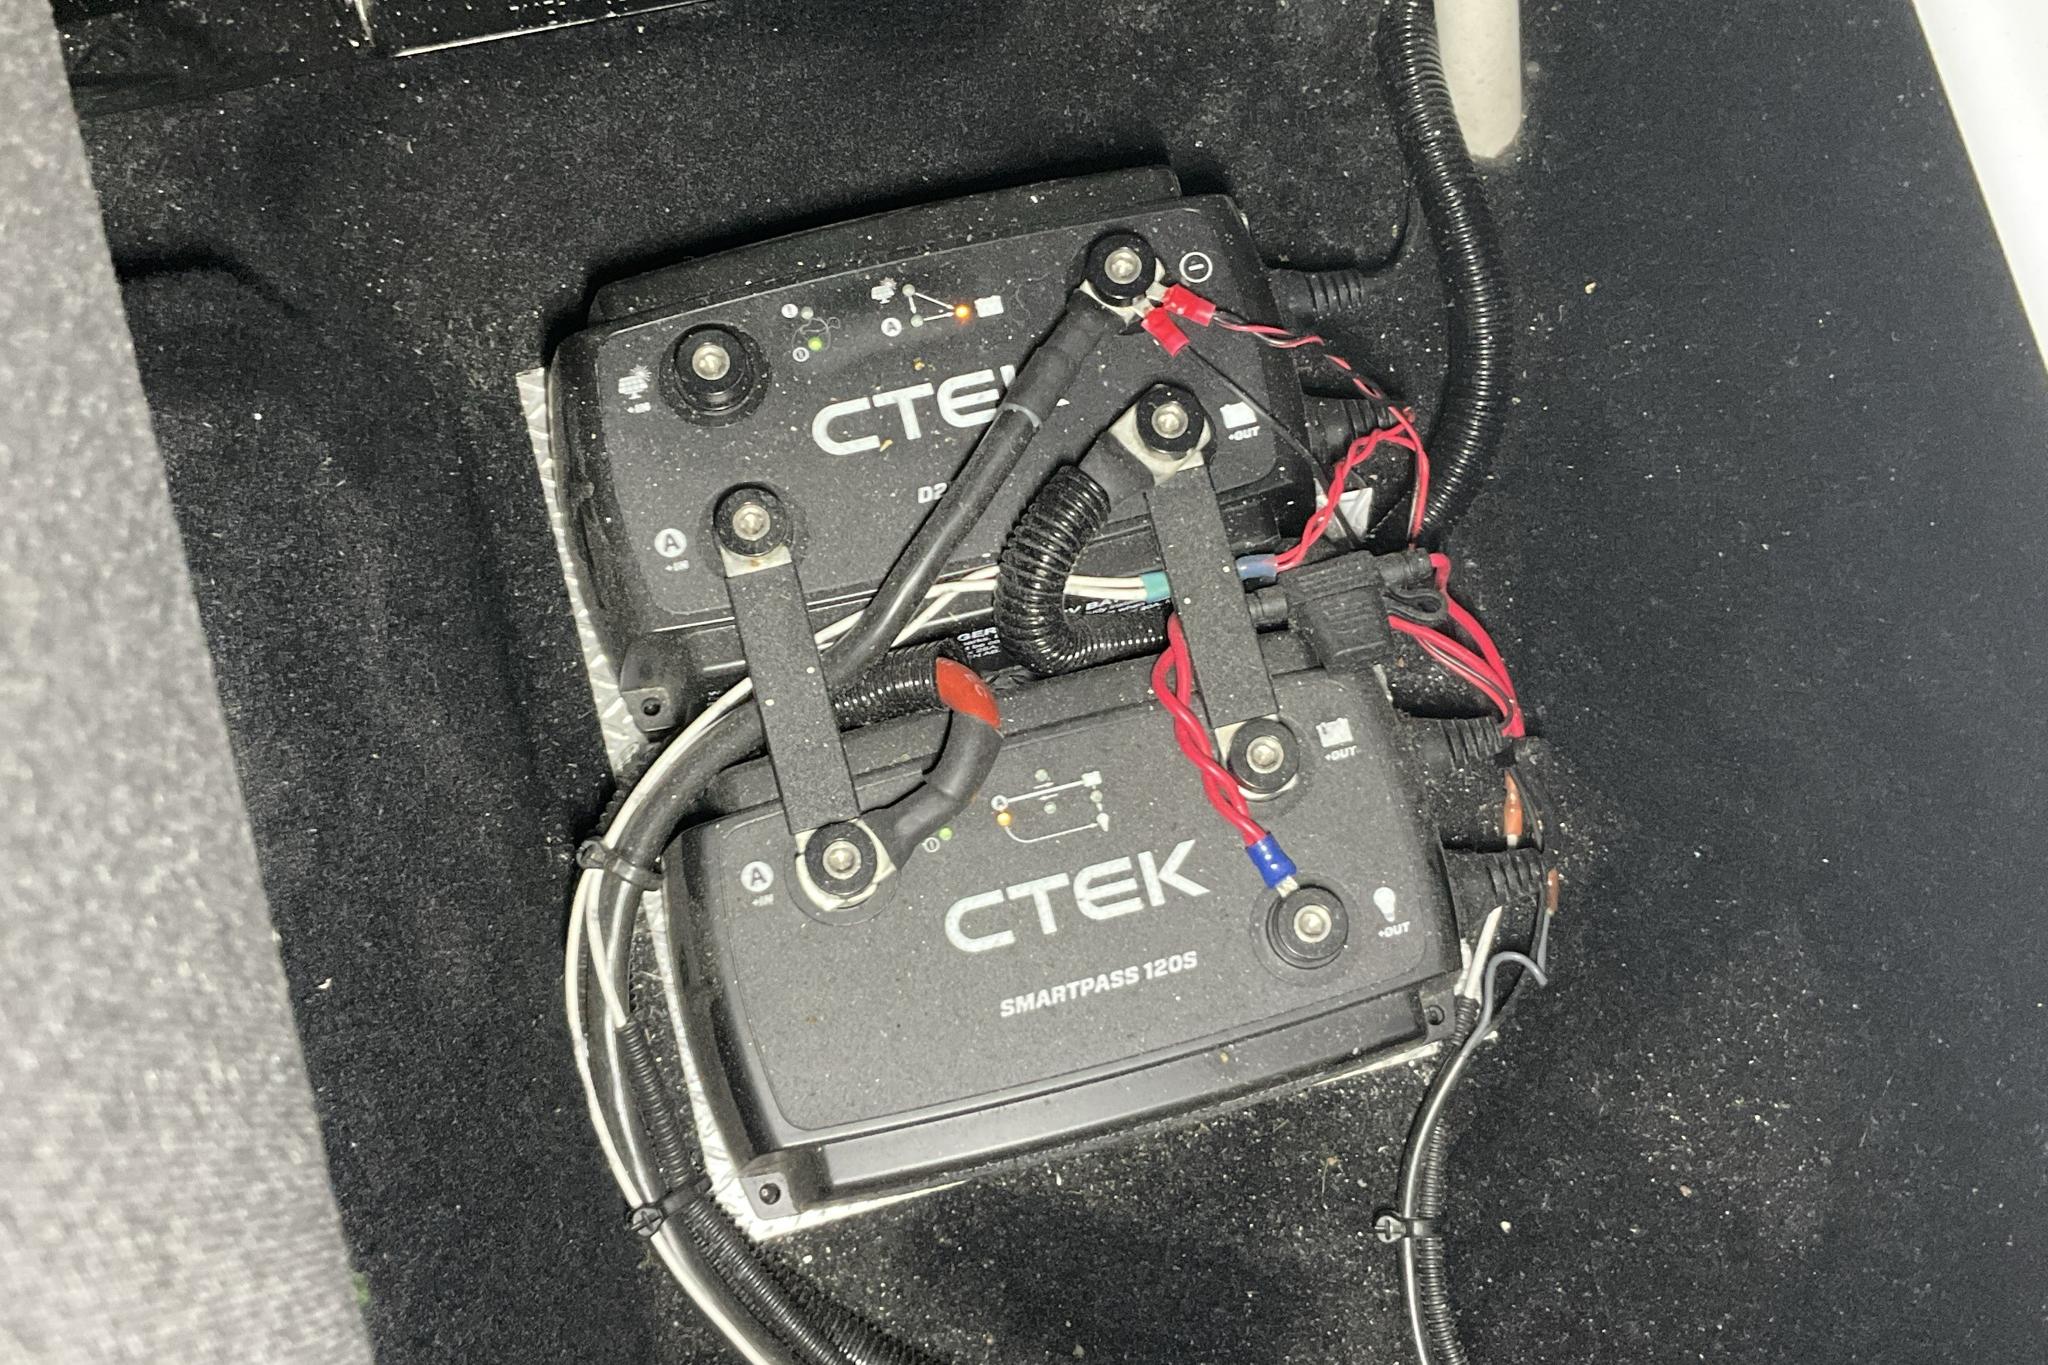 VW Caddy 1.4 TGI Maxi Skåp (110hk) - 9 433 mil - Automat - vit - 2019